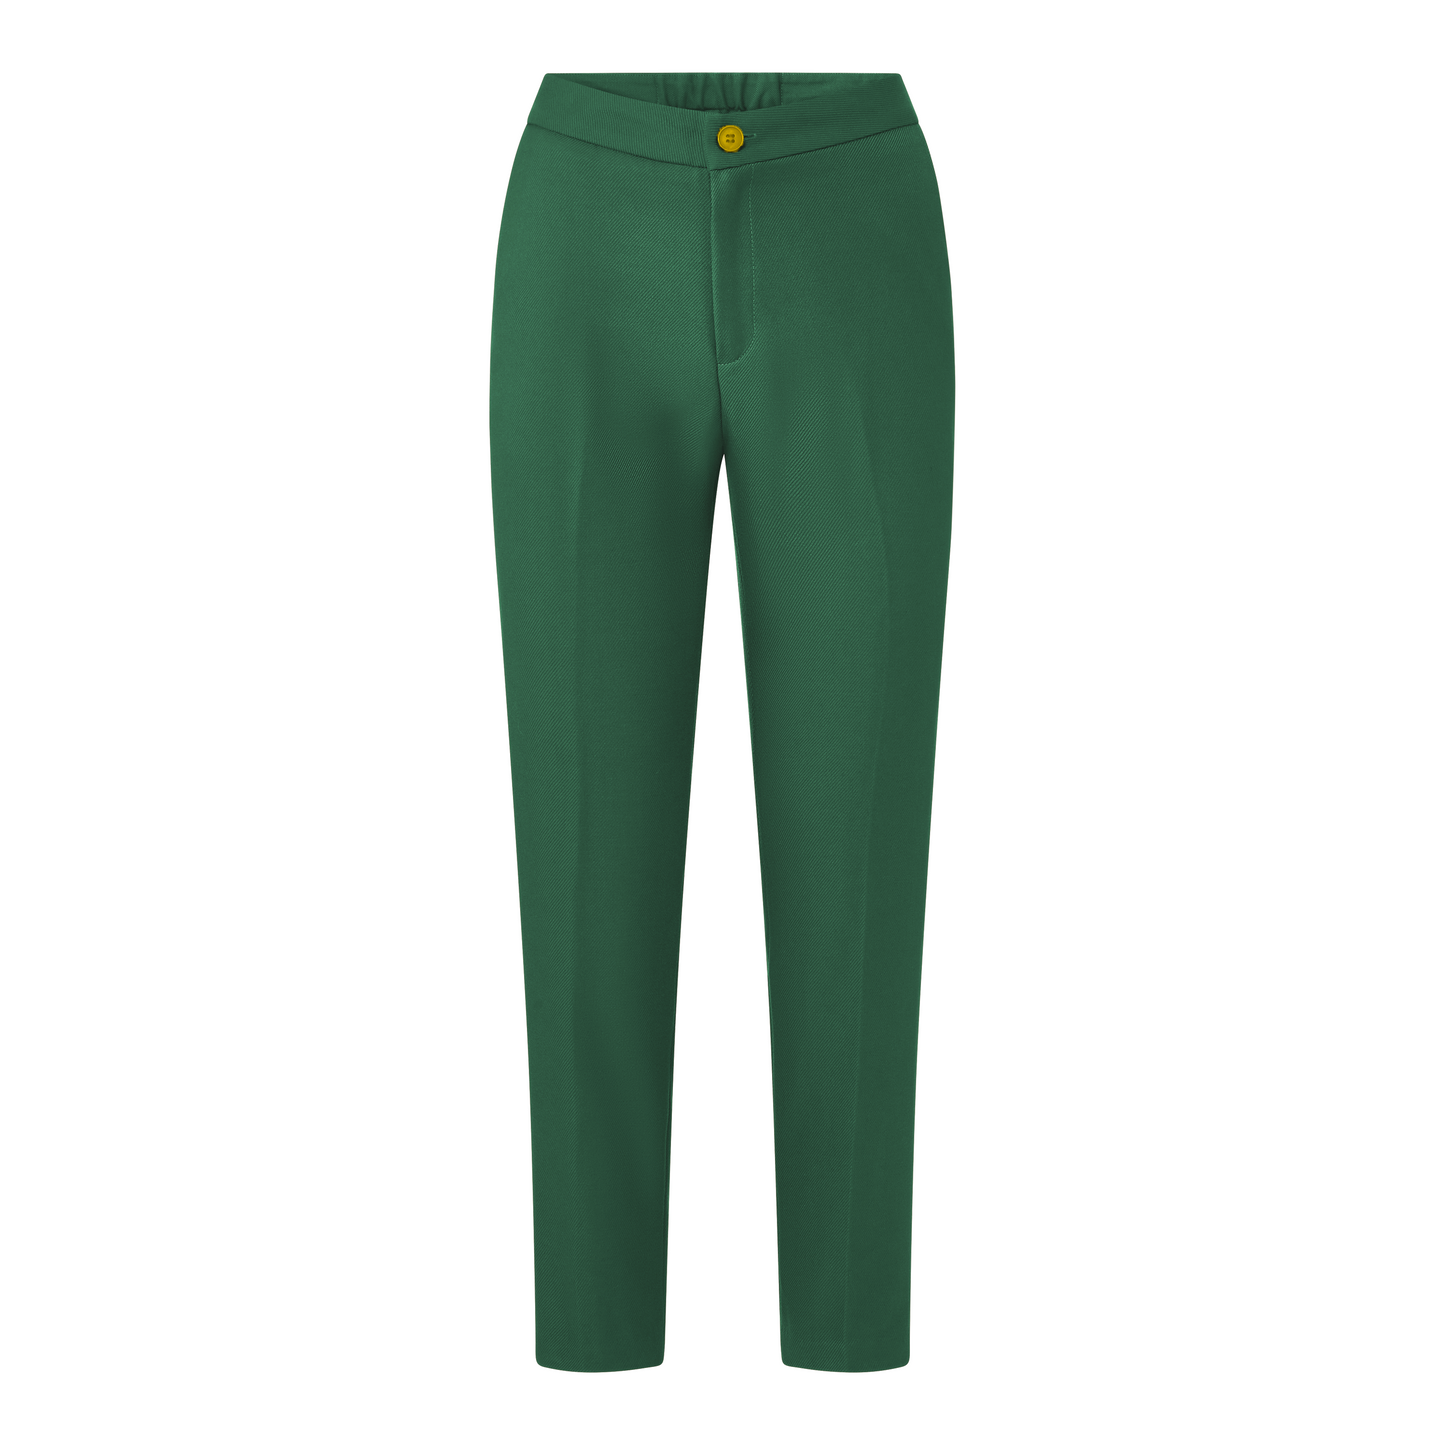 Deal Closer Straight Leg Pants - Emerald